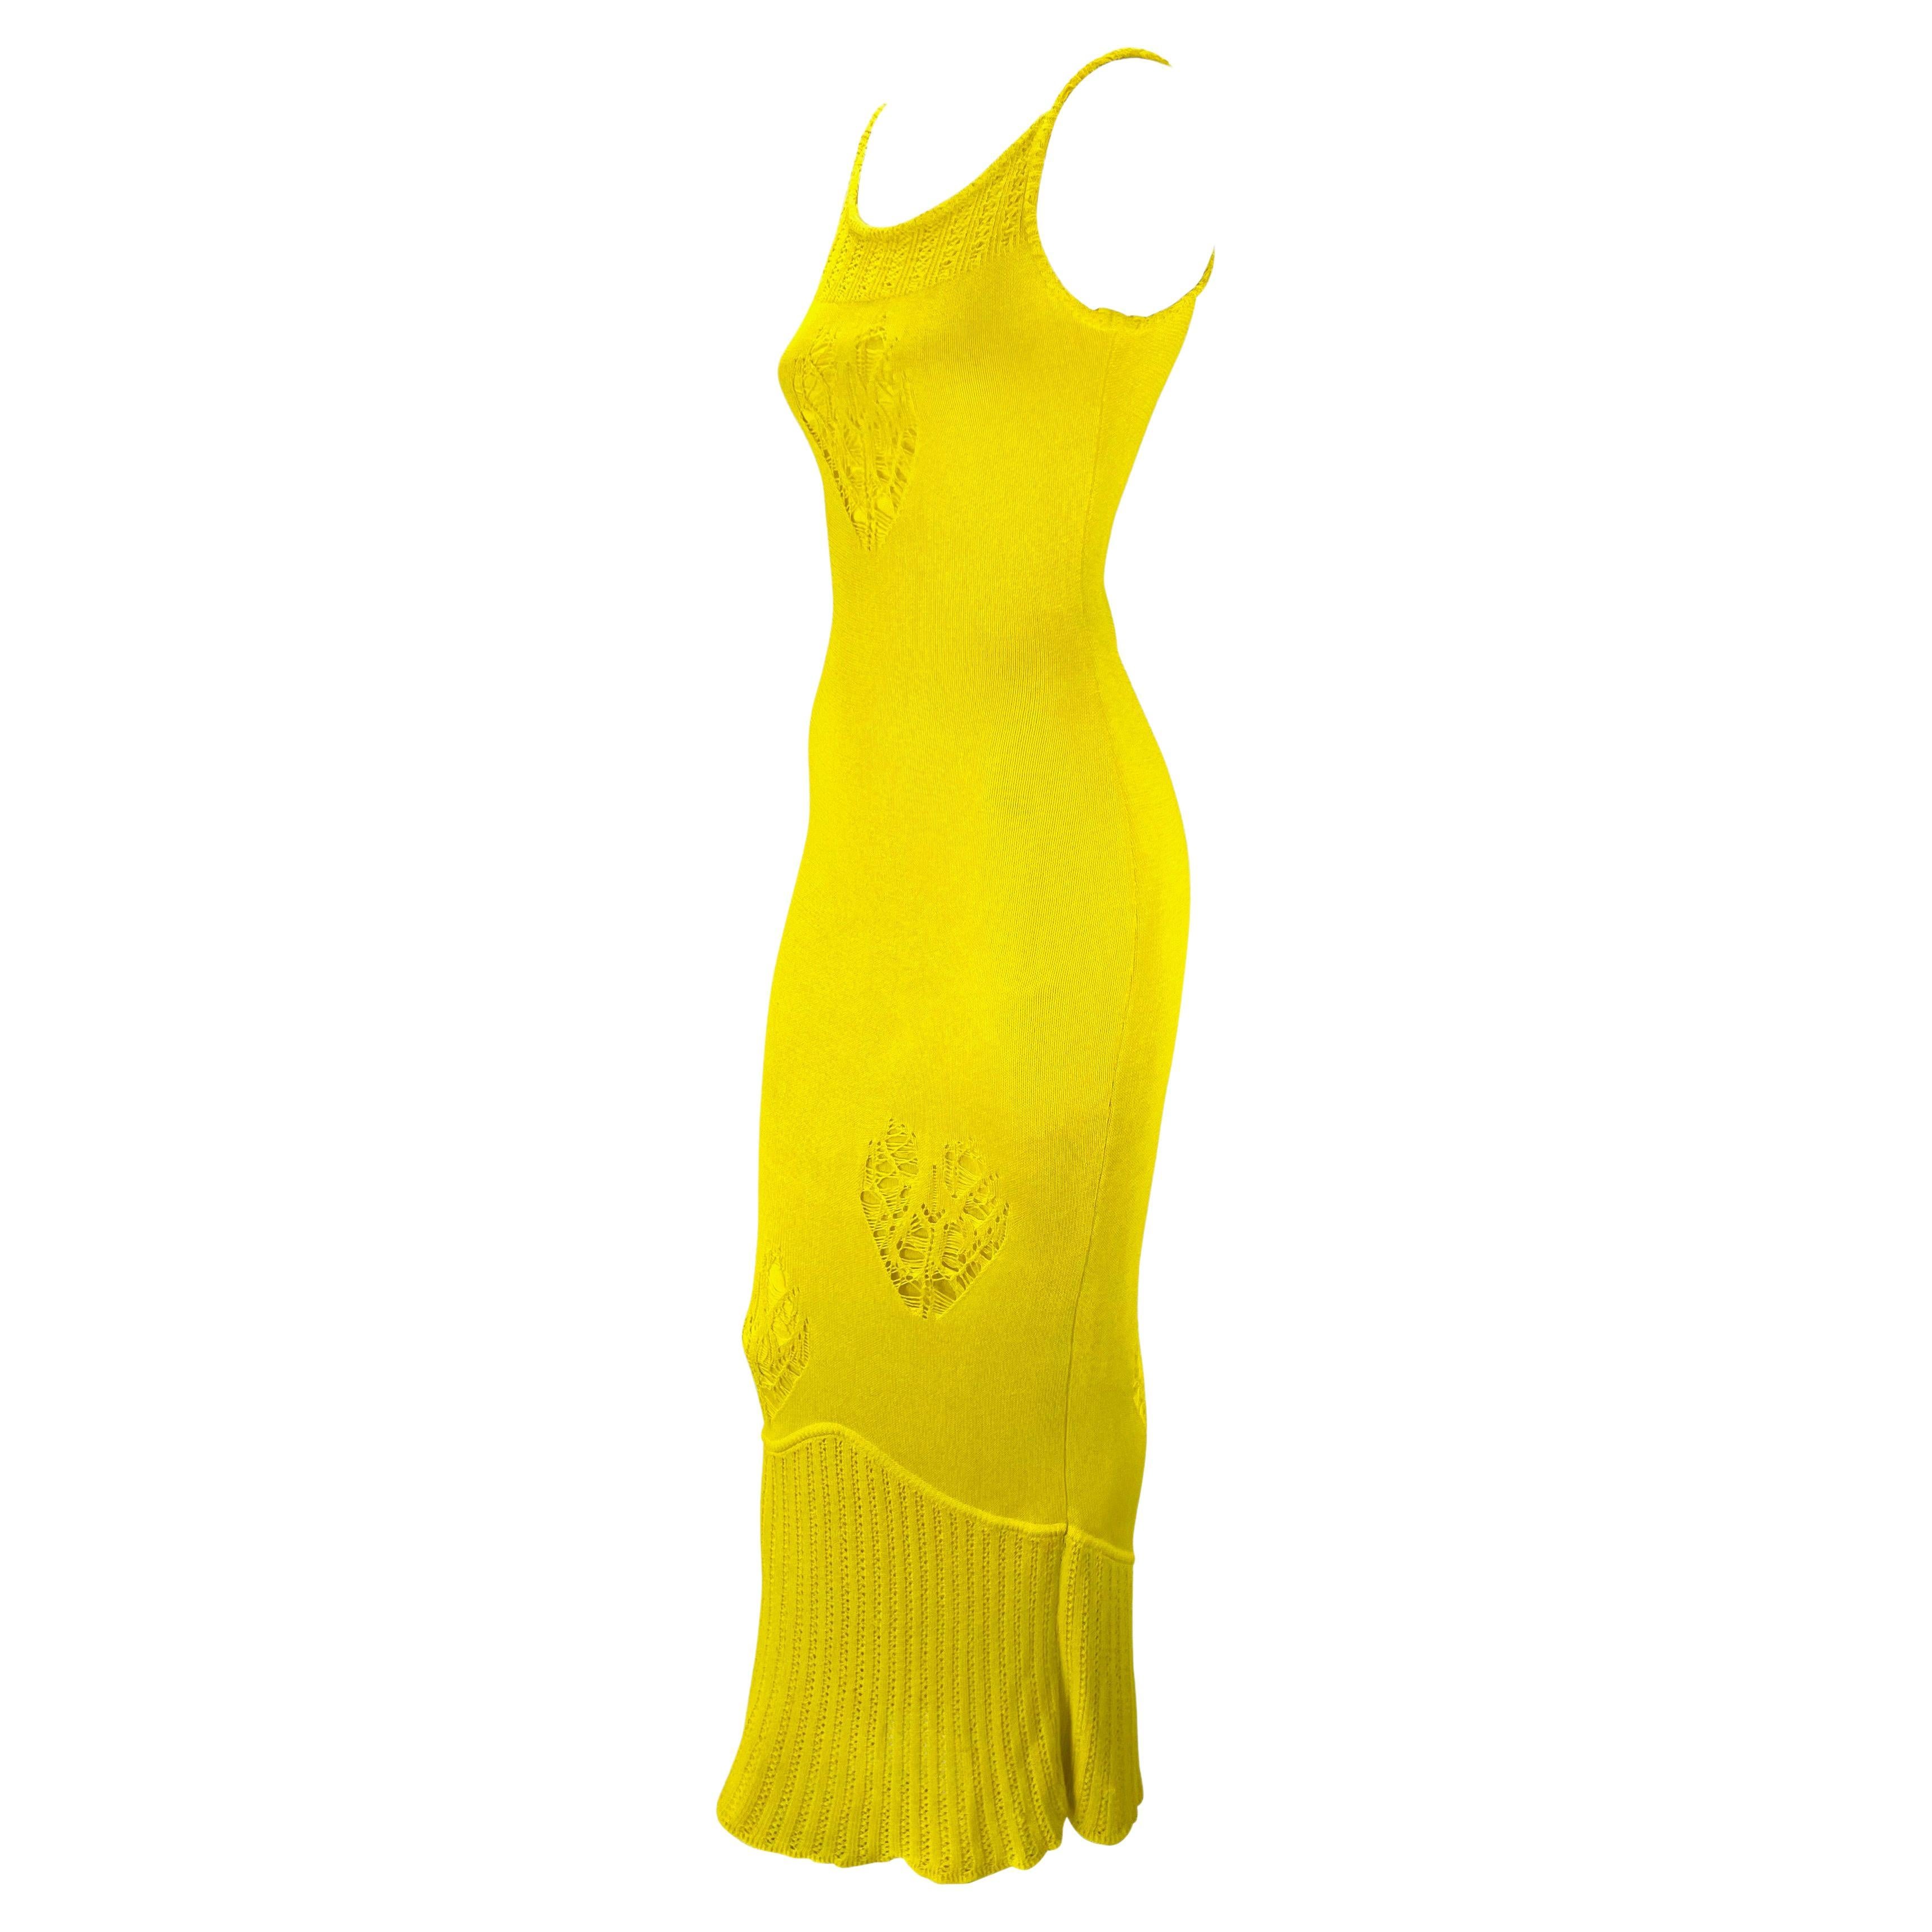 Elle présente une magnifique robe en tricot jaune canari de John Galliano. Issue de la collection printemps/été 2000 de Galliano, cette robe en maille est dotée d'une large encolure et d'un dos échancrés. La robe présente différents motifs de tricot